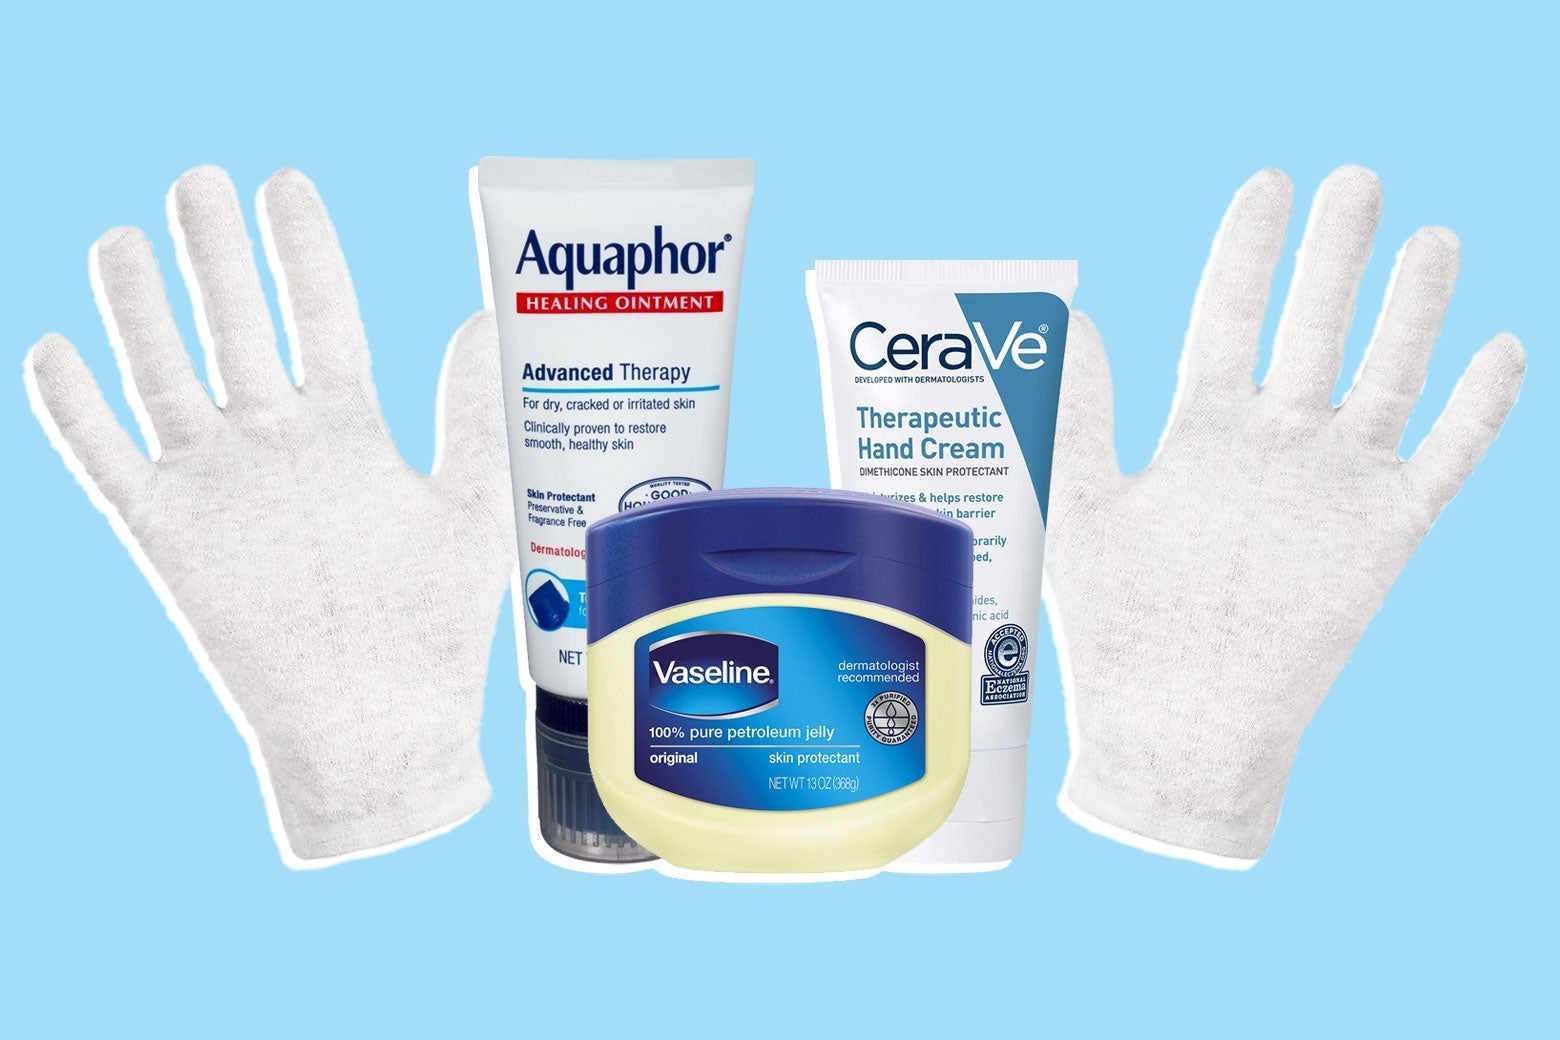 White gloves, Aquaphor, Vaseline, and CeraVe. 